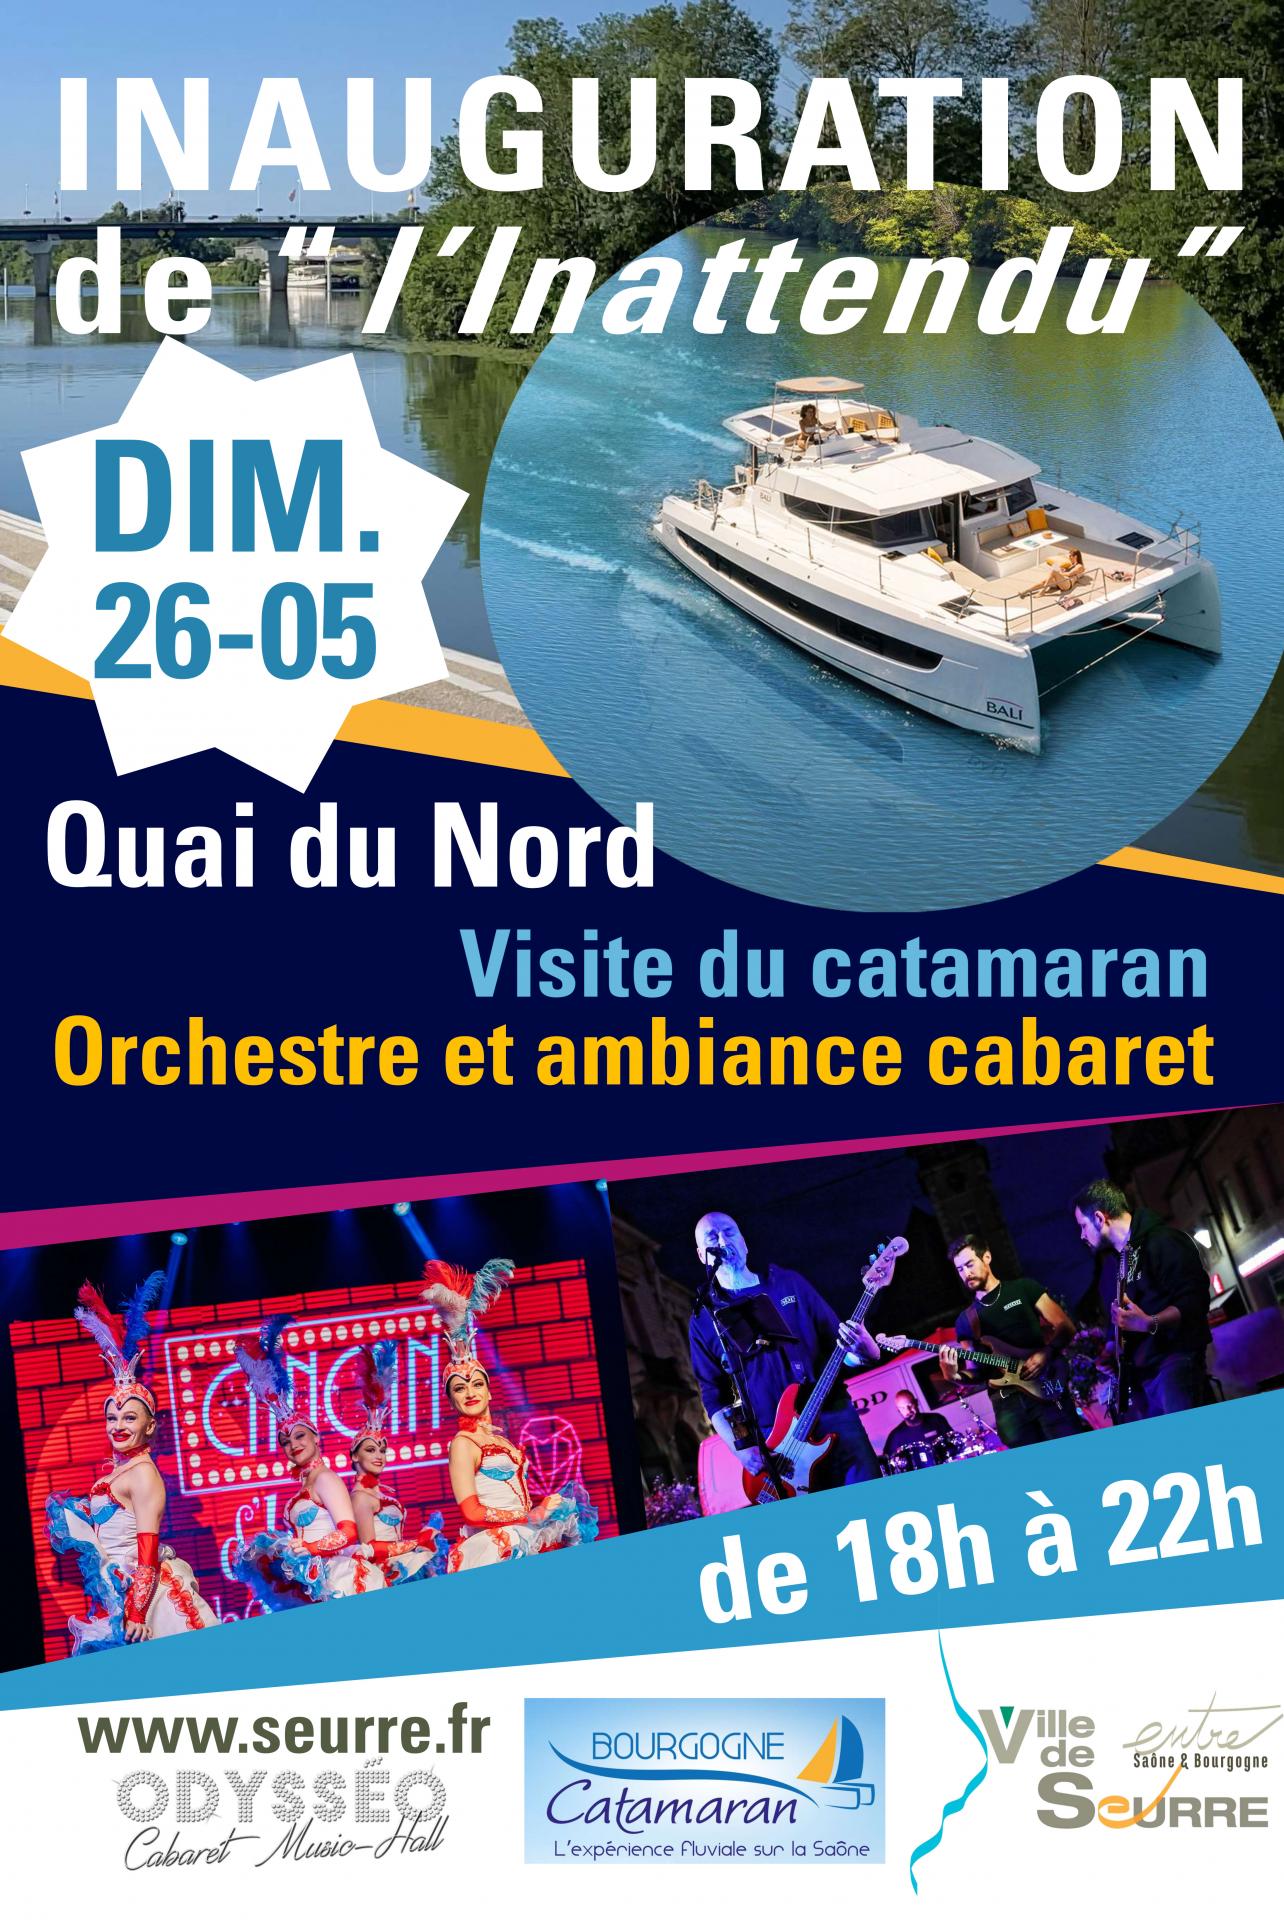 Inauguration du catamaran l'Inattendu dimanche 26 mai à Seurre